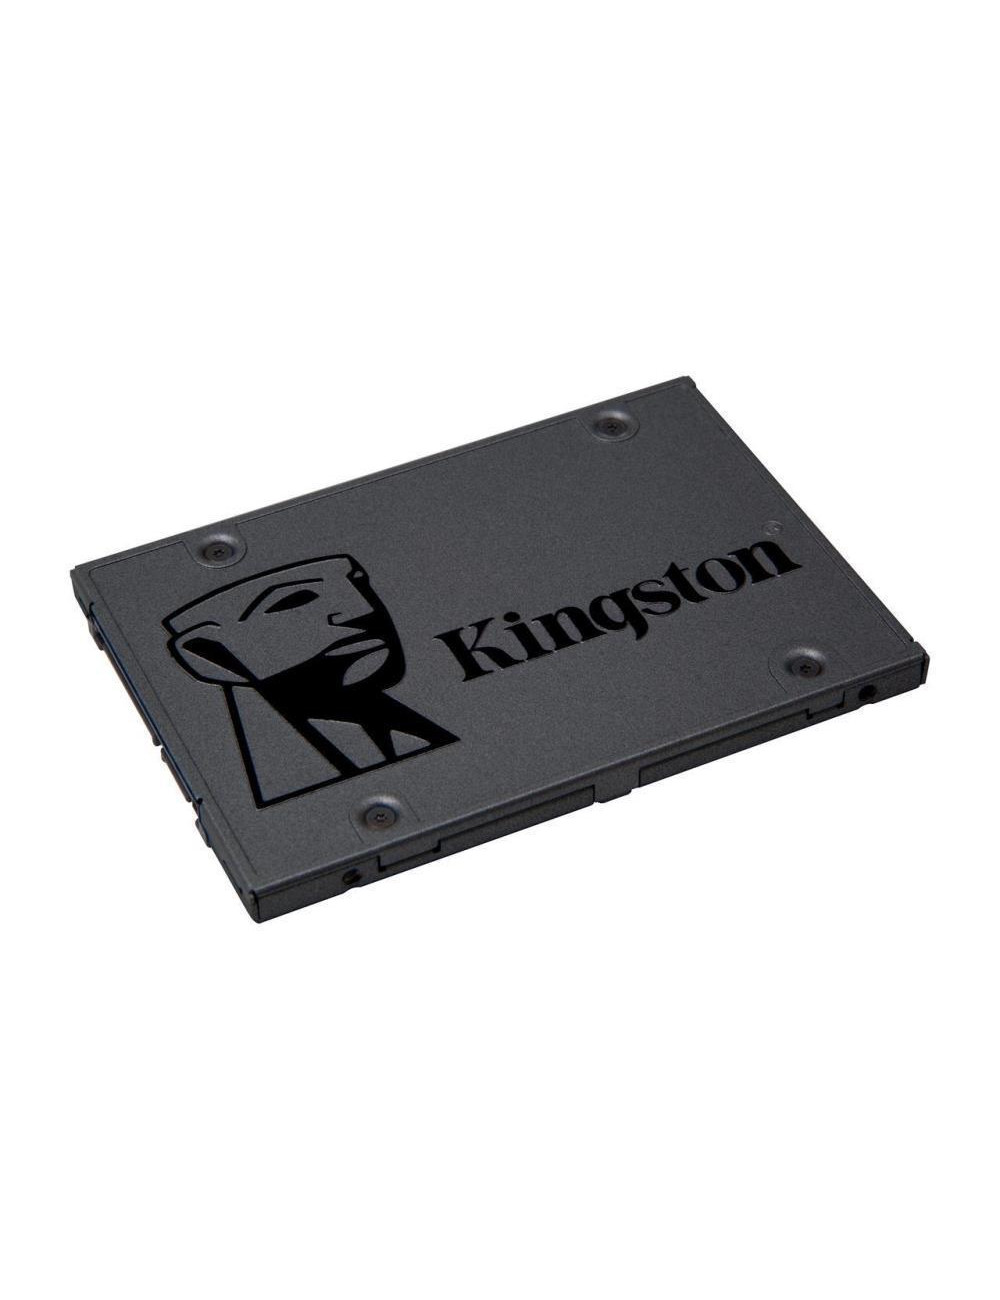 SSD|KINGSTON|A400|960GB|SATA 3.0|TLC|Write speed 450 MBytes/sec|Read speed 500 MBytes/sec|2,5"|TBW 300 TB|MTBF 1000000 hours|SA4